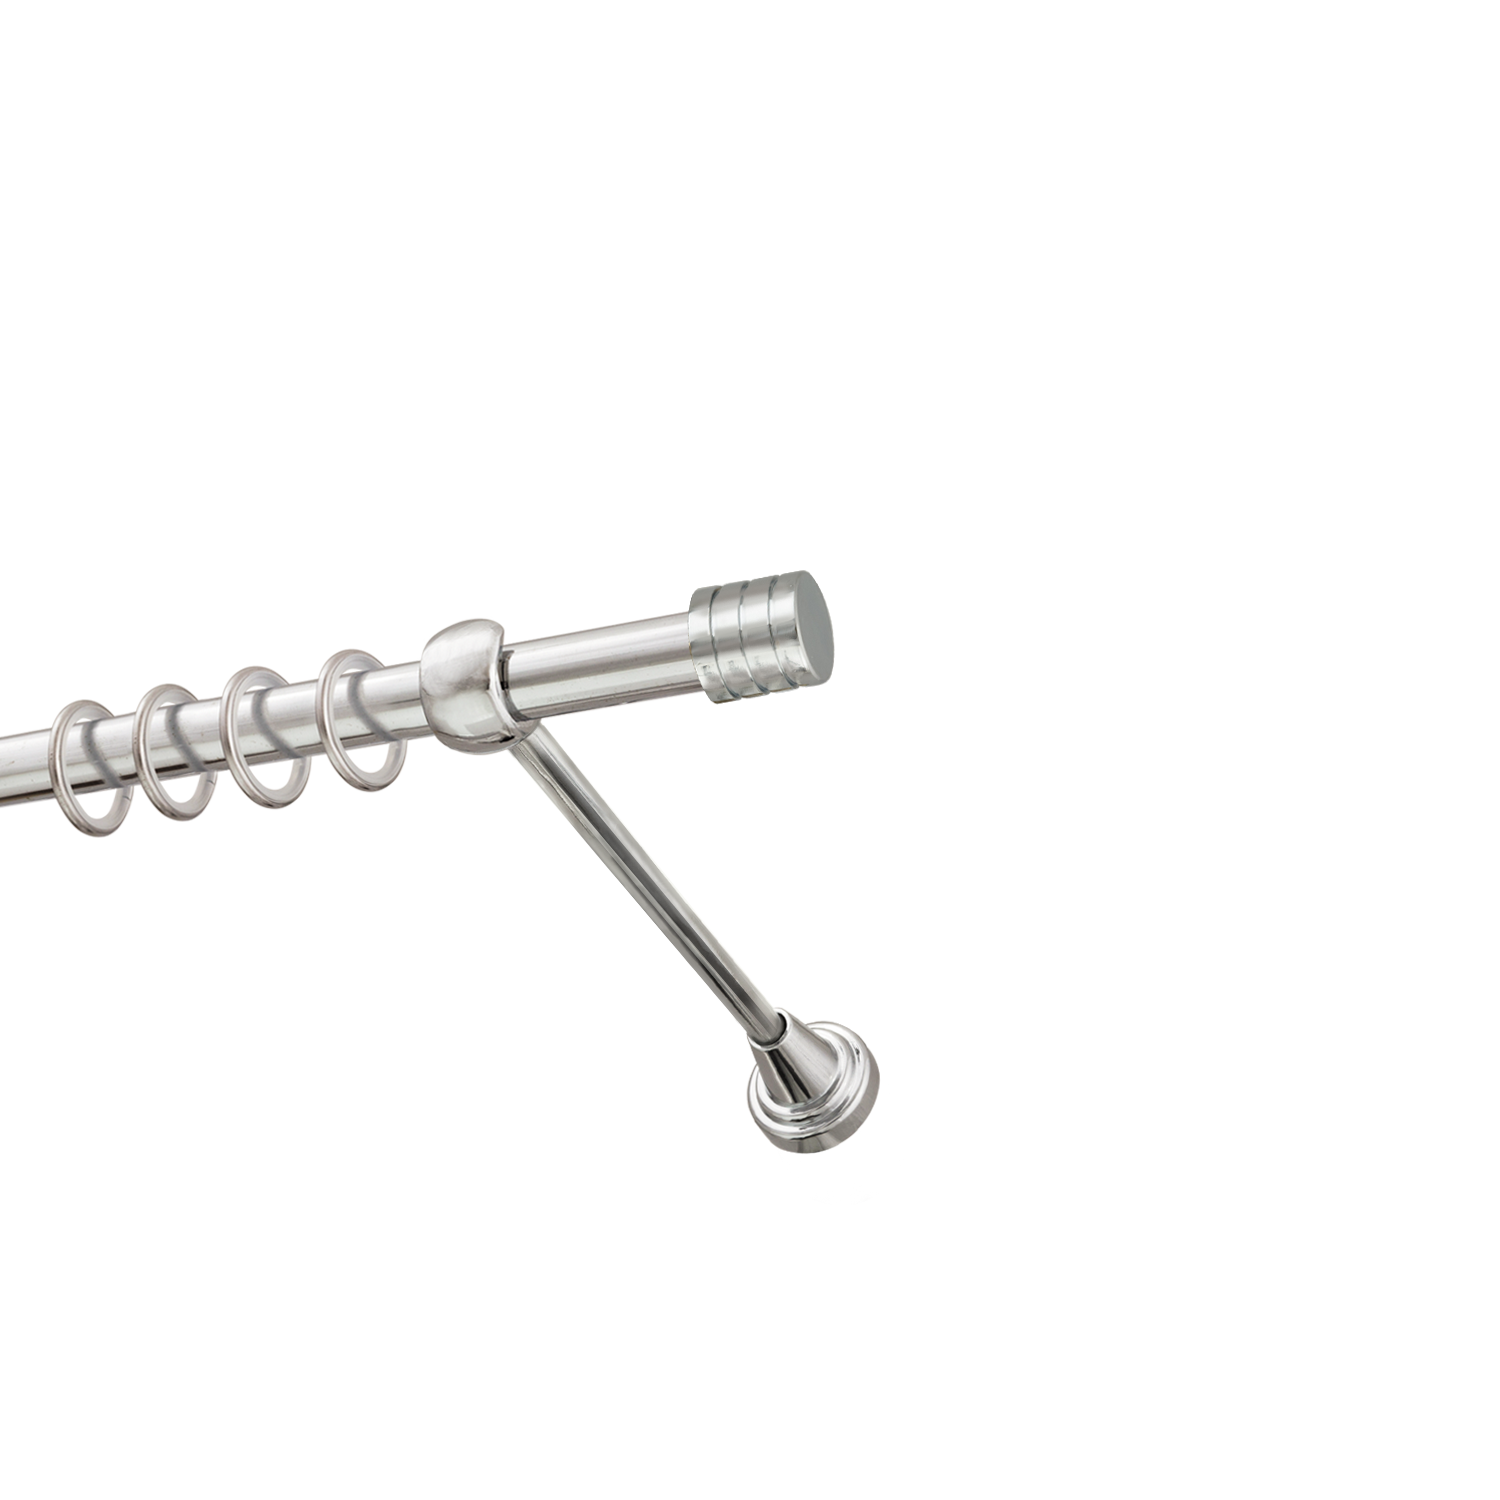 Металлический карниз для штор Подиум, однорядный 16 мм, серебро, гладкая штанга, длина 200 см - фото Wikidecor.ru